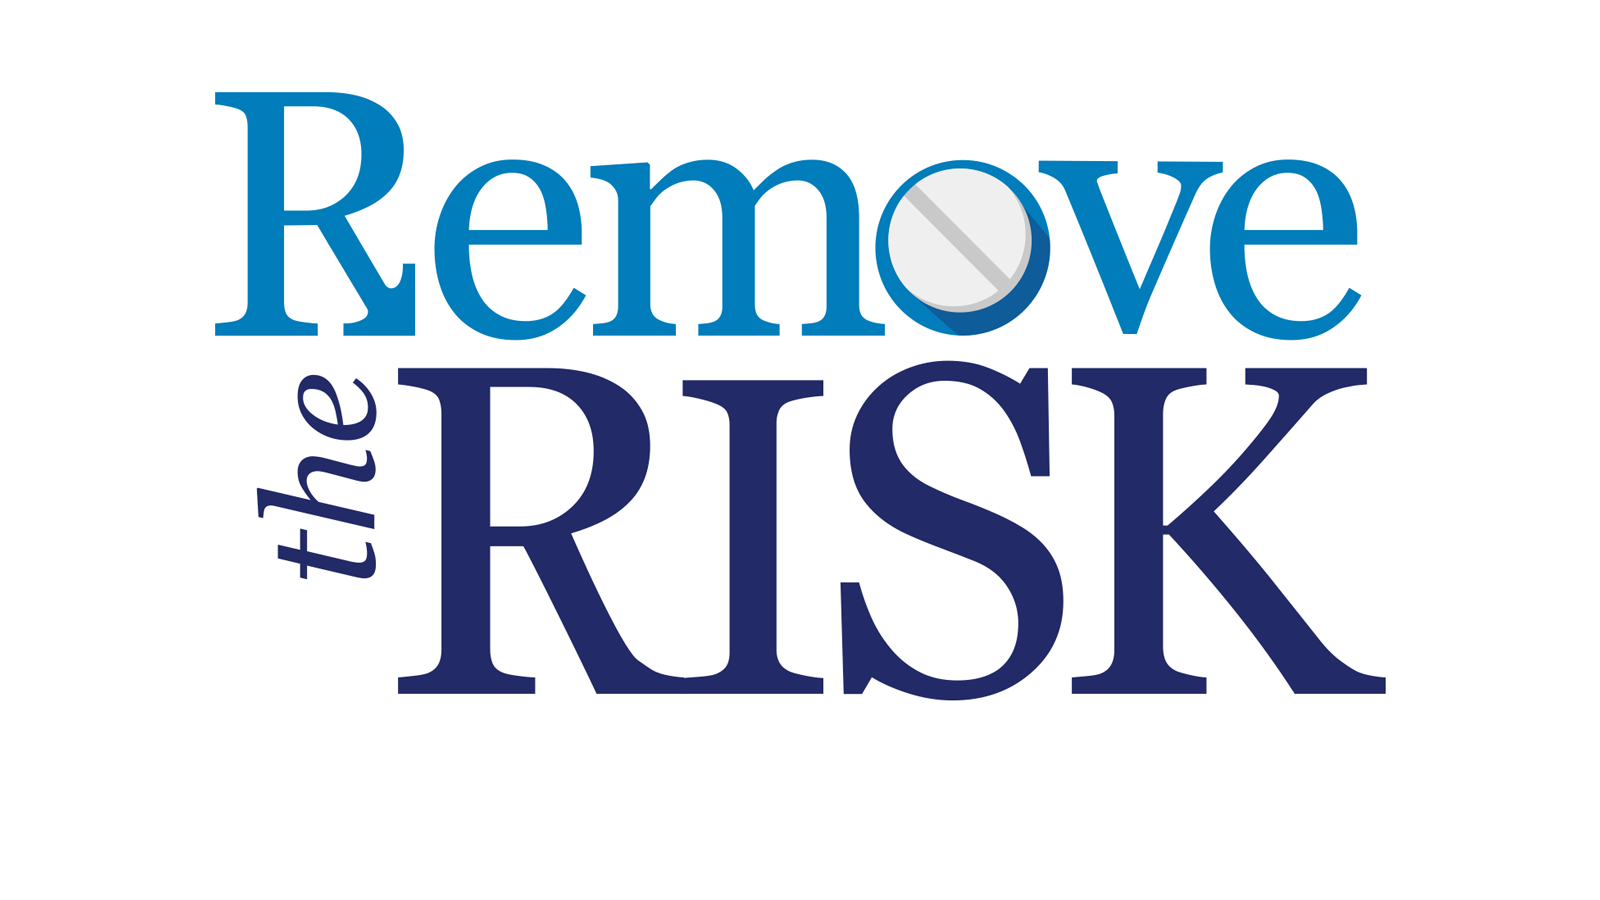 Remove the risk